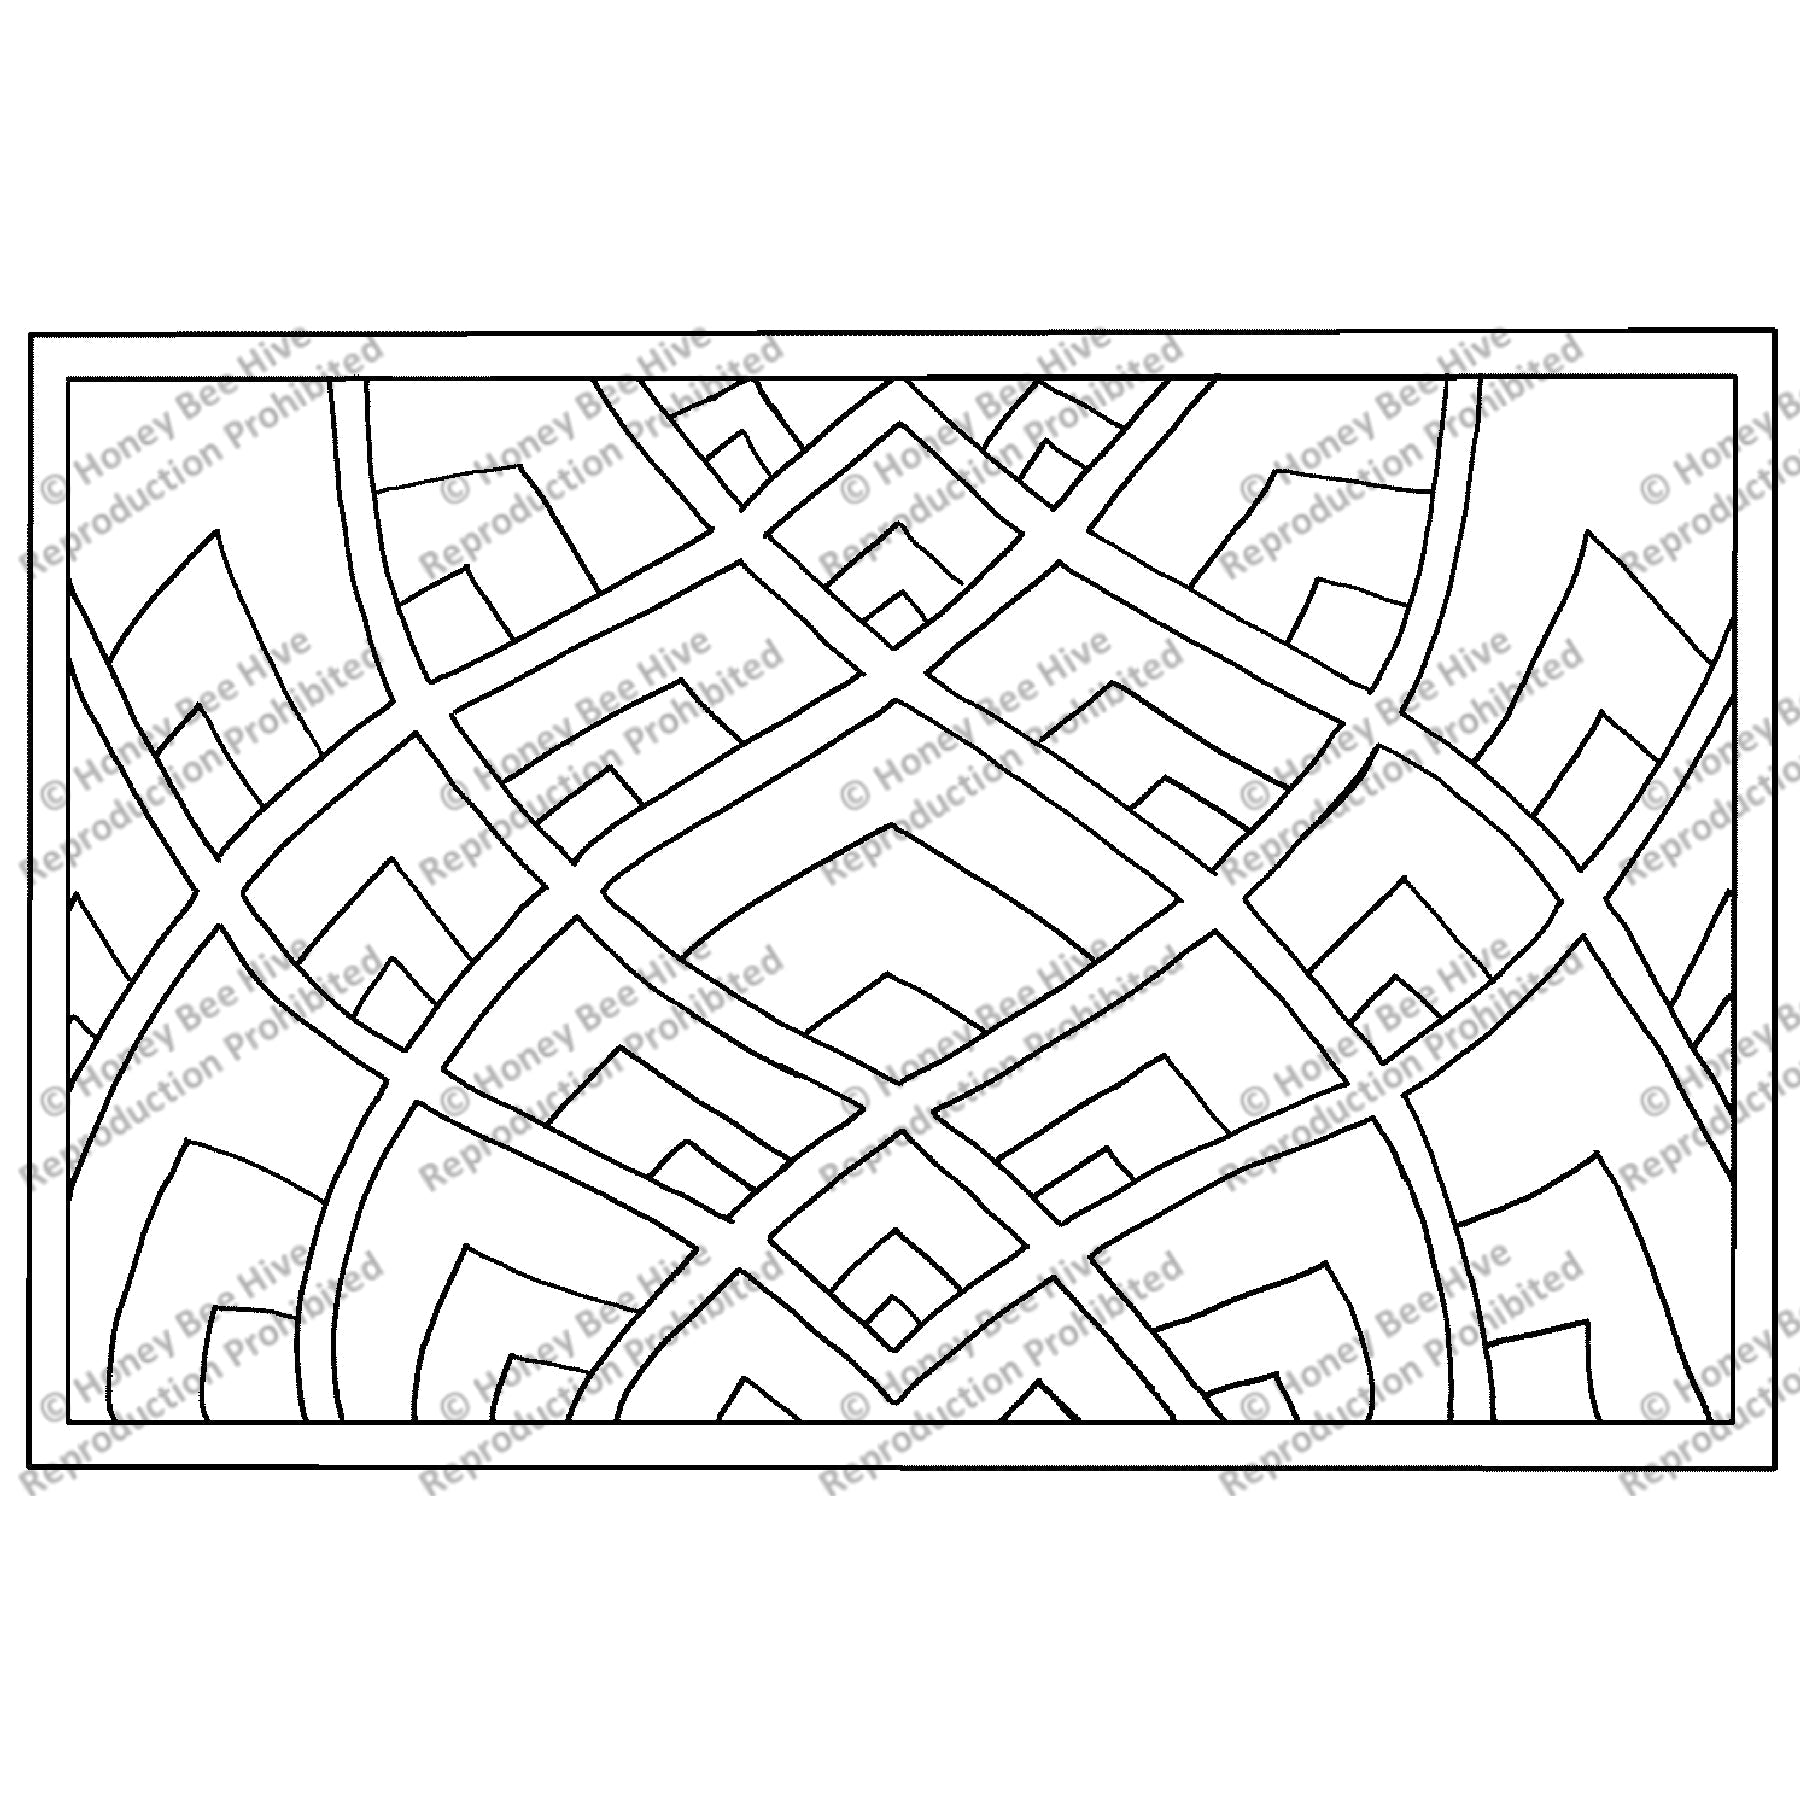 Pinnacle, rug hooking pattern